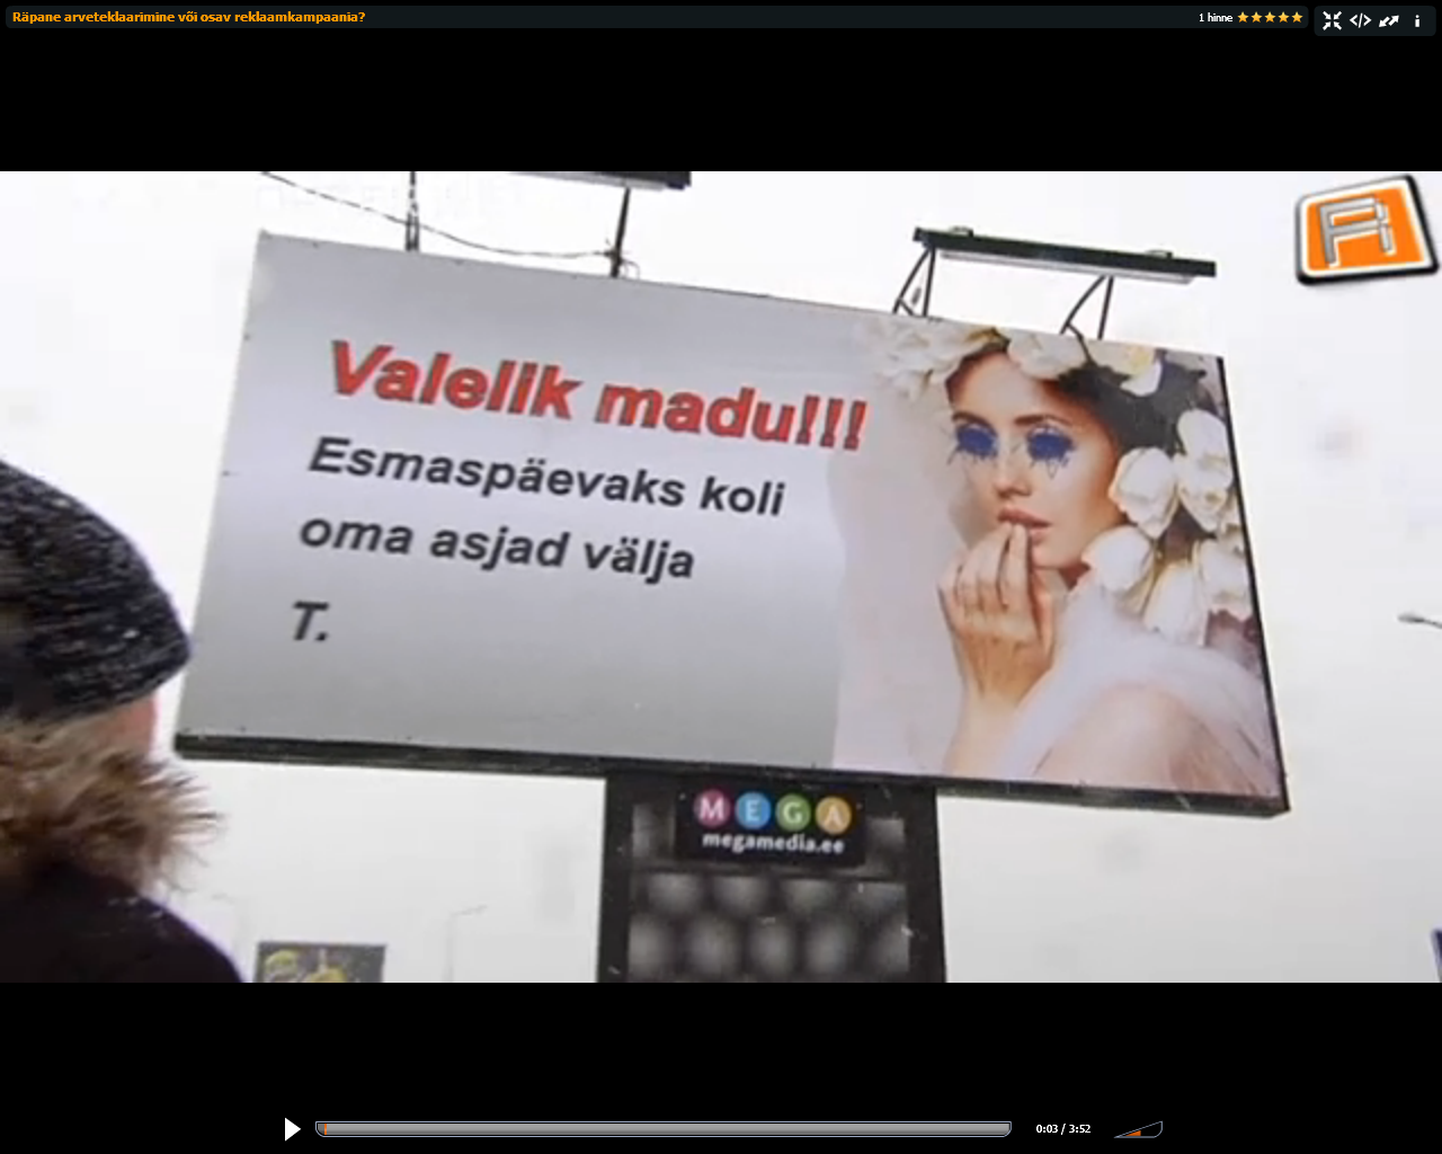 Tiheda liiklusega Pirita tee ja Pärnu maantee äärs ripuvad üleval päris raju tekstiga suured reklaamplakatid